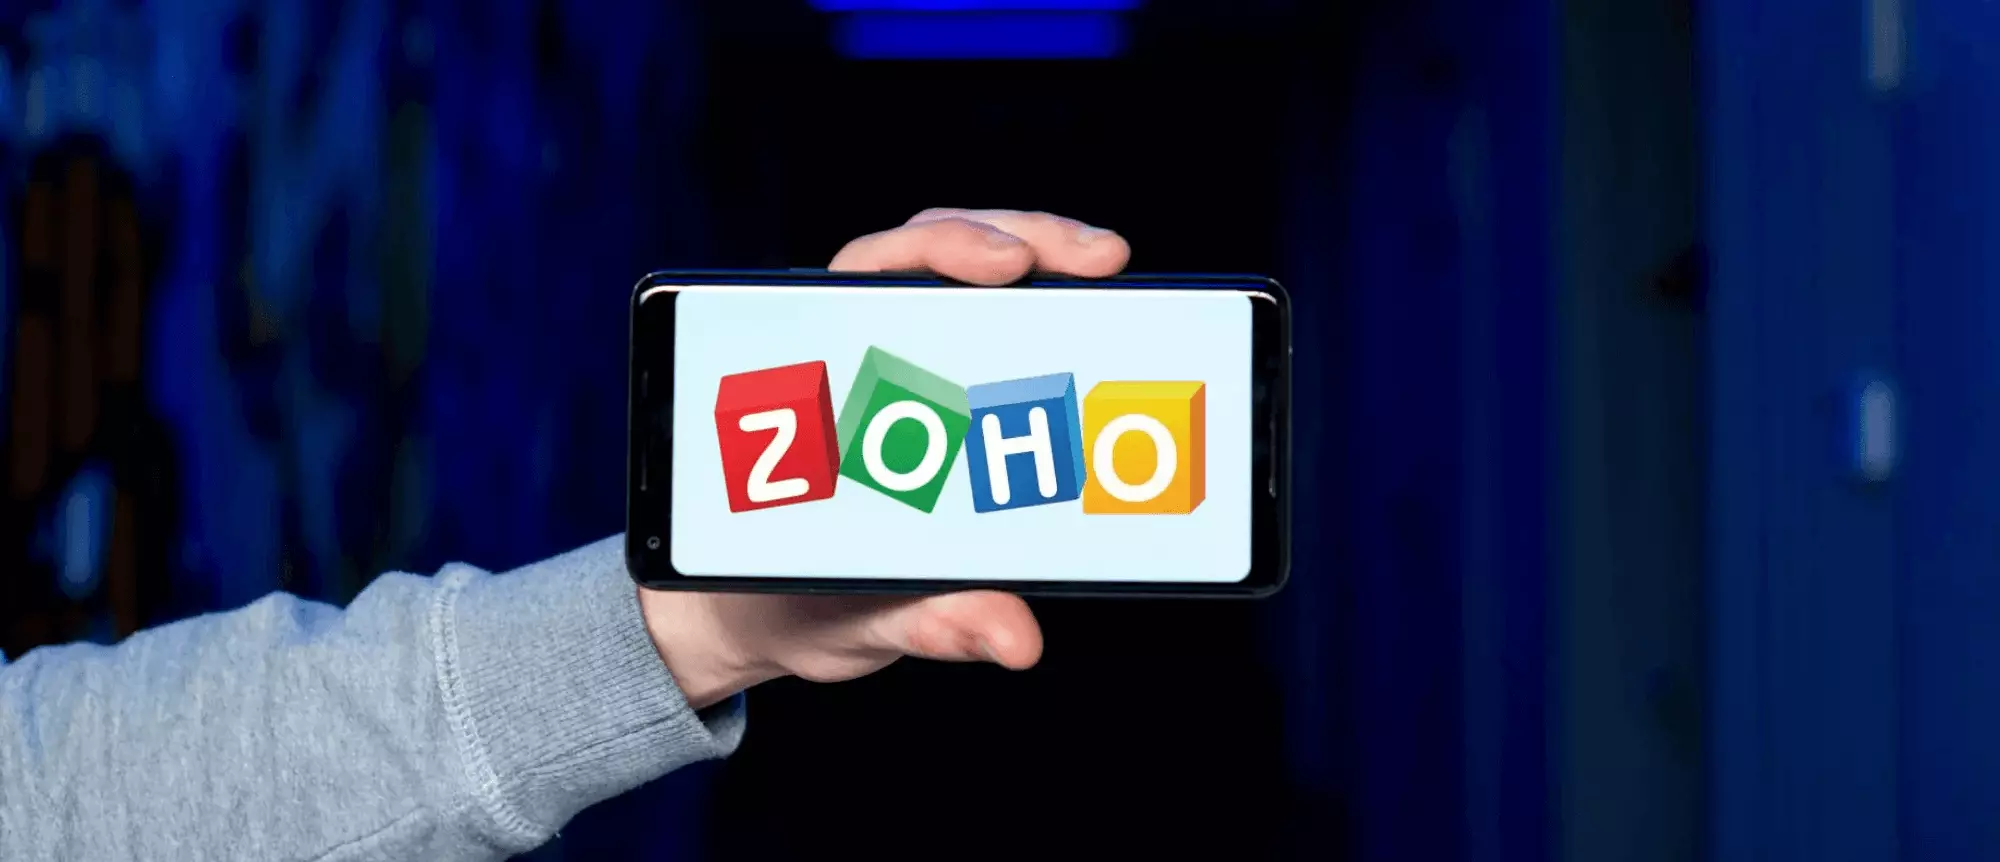 Is Zoho an SMTP?